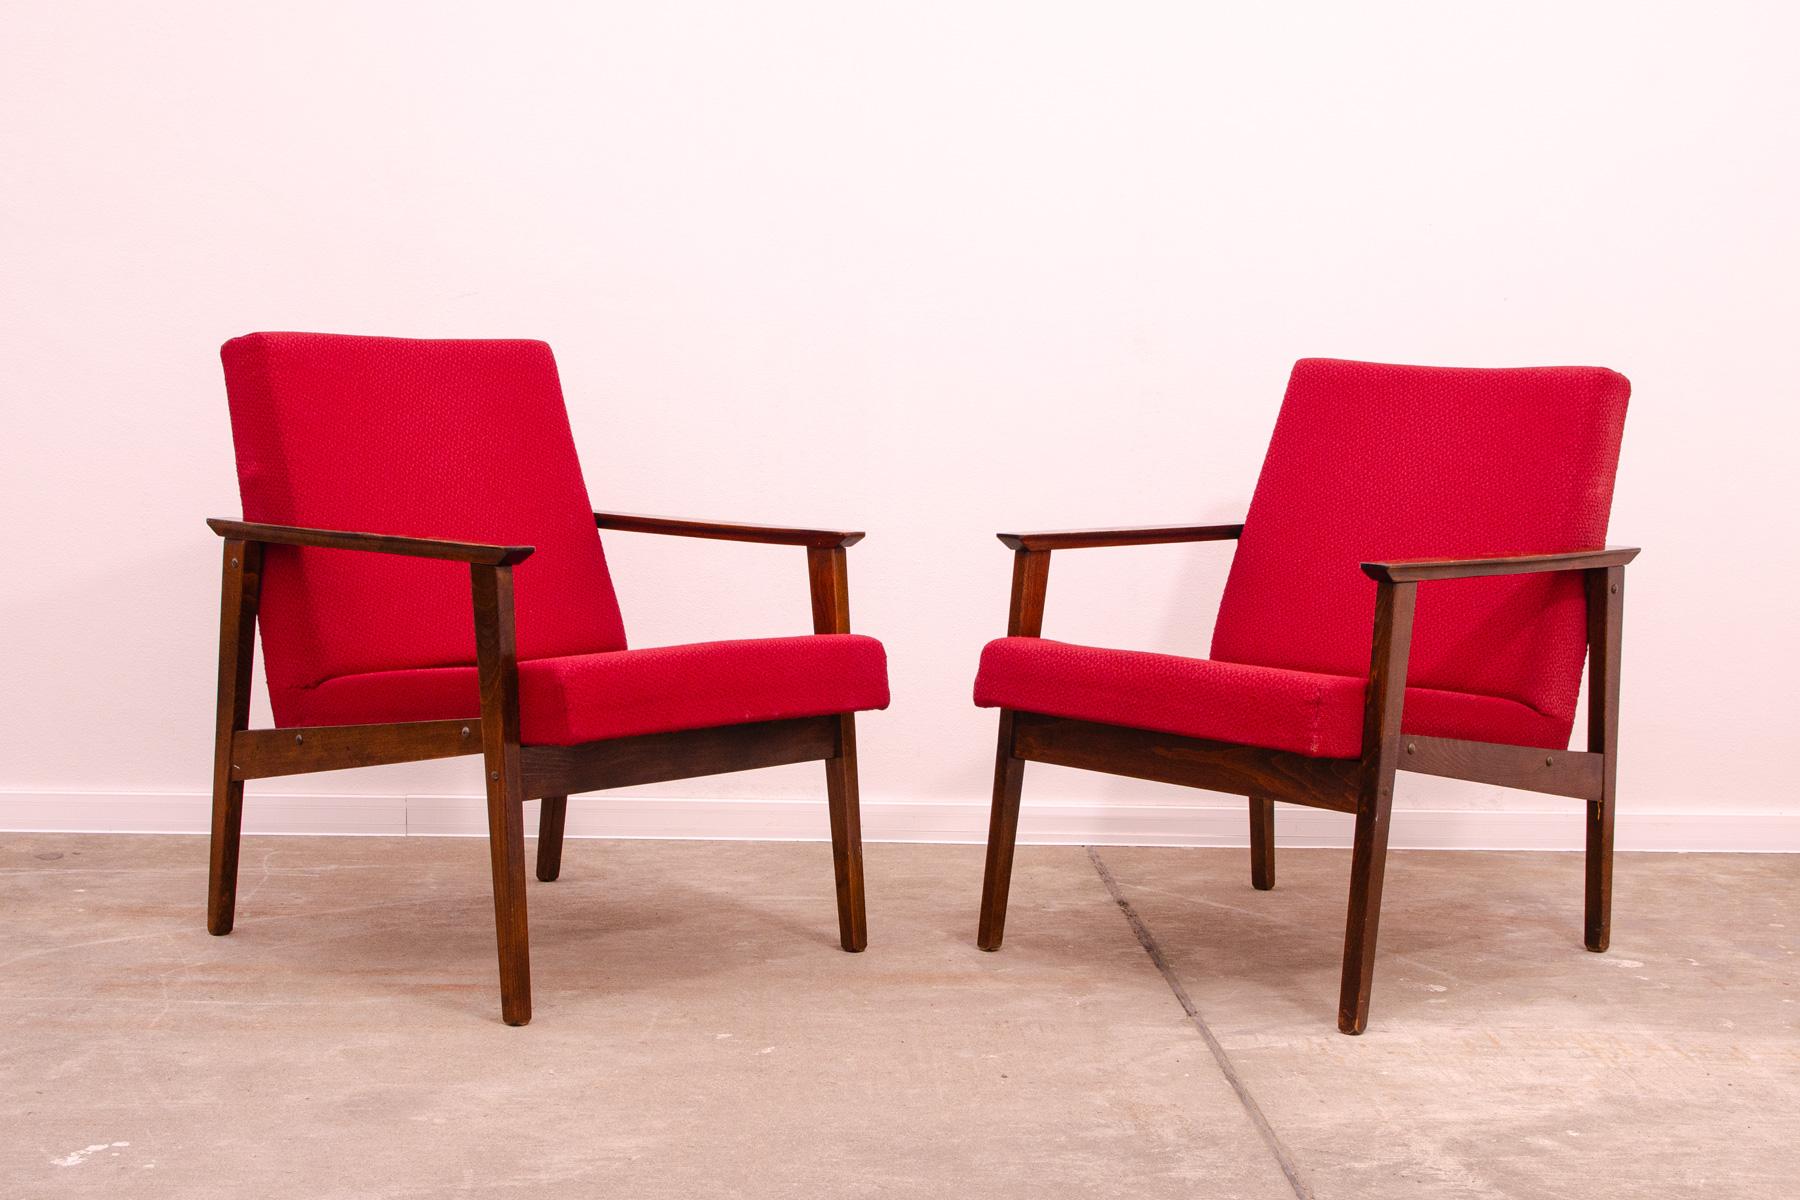 Diese Sessel aus der Mitte des Jahrhunderts wurden von Jaroslav Šmídek für die Firma TON entworfen und in der ehemaligen Tschechoslowakei in den 1970er Jahren hergestellt. Sie sind aus Buchenholz gefertigt.

Die Stühle sind stabil und bequem, die